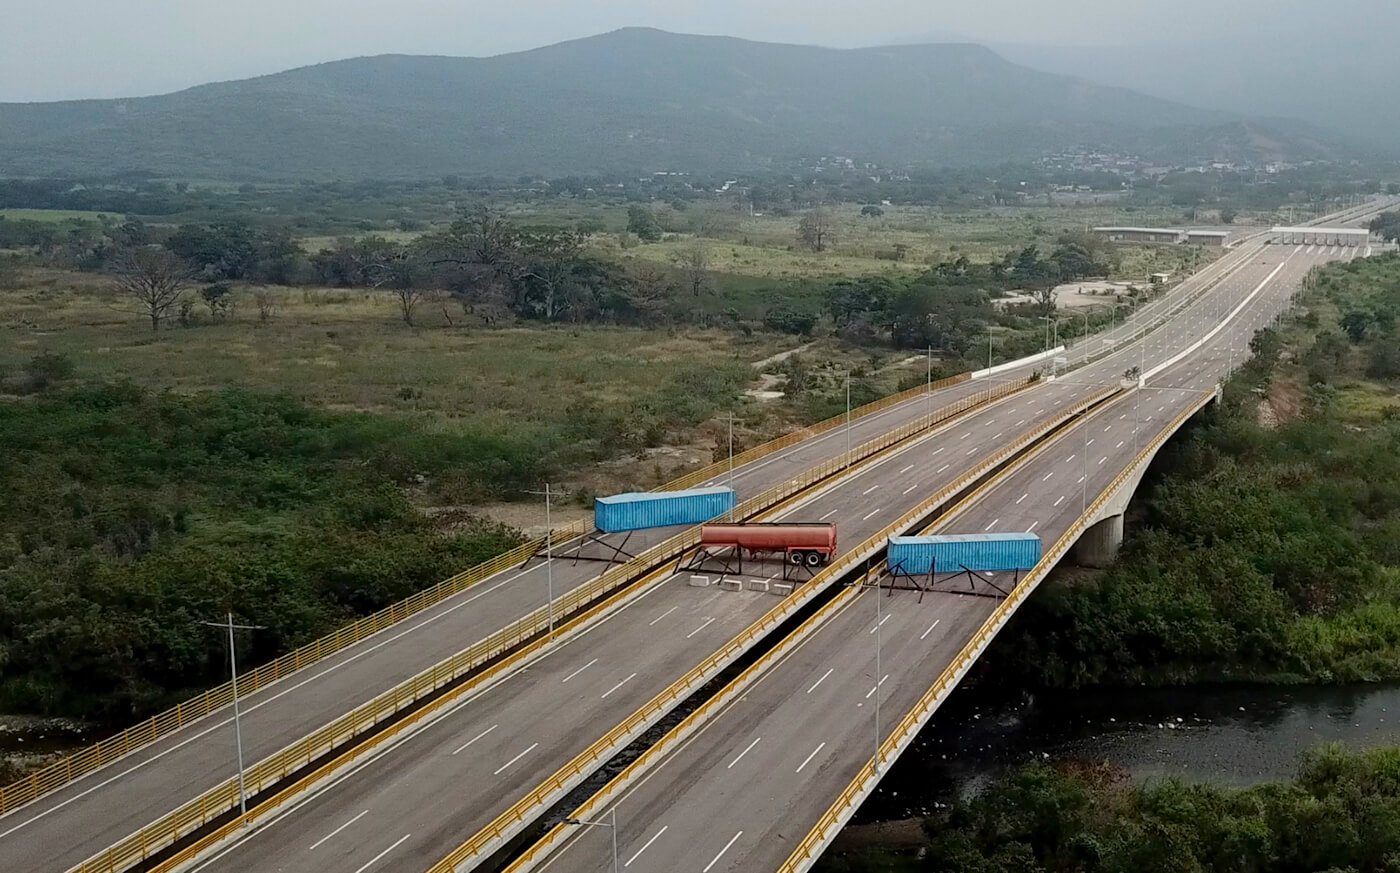 Venezuela | Tienditas Bridge